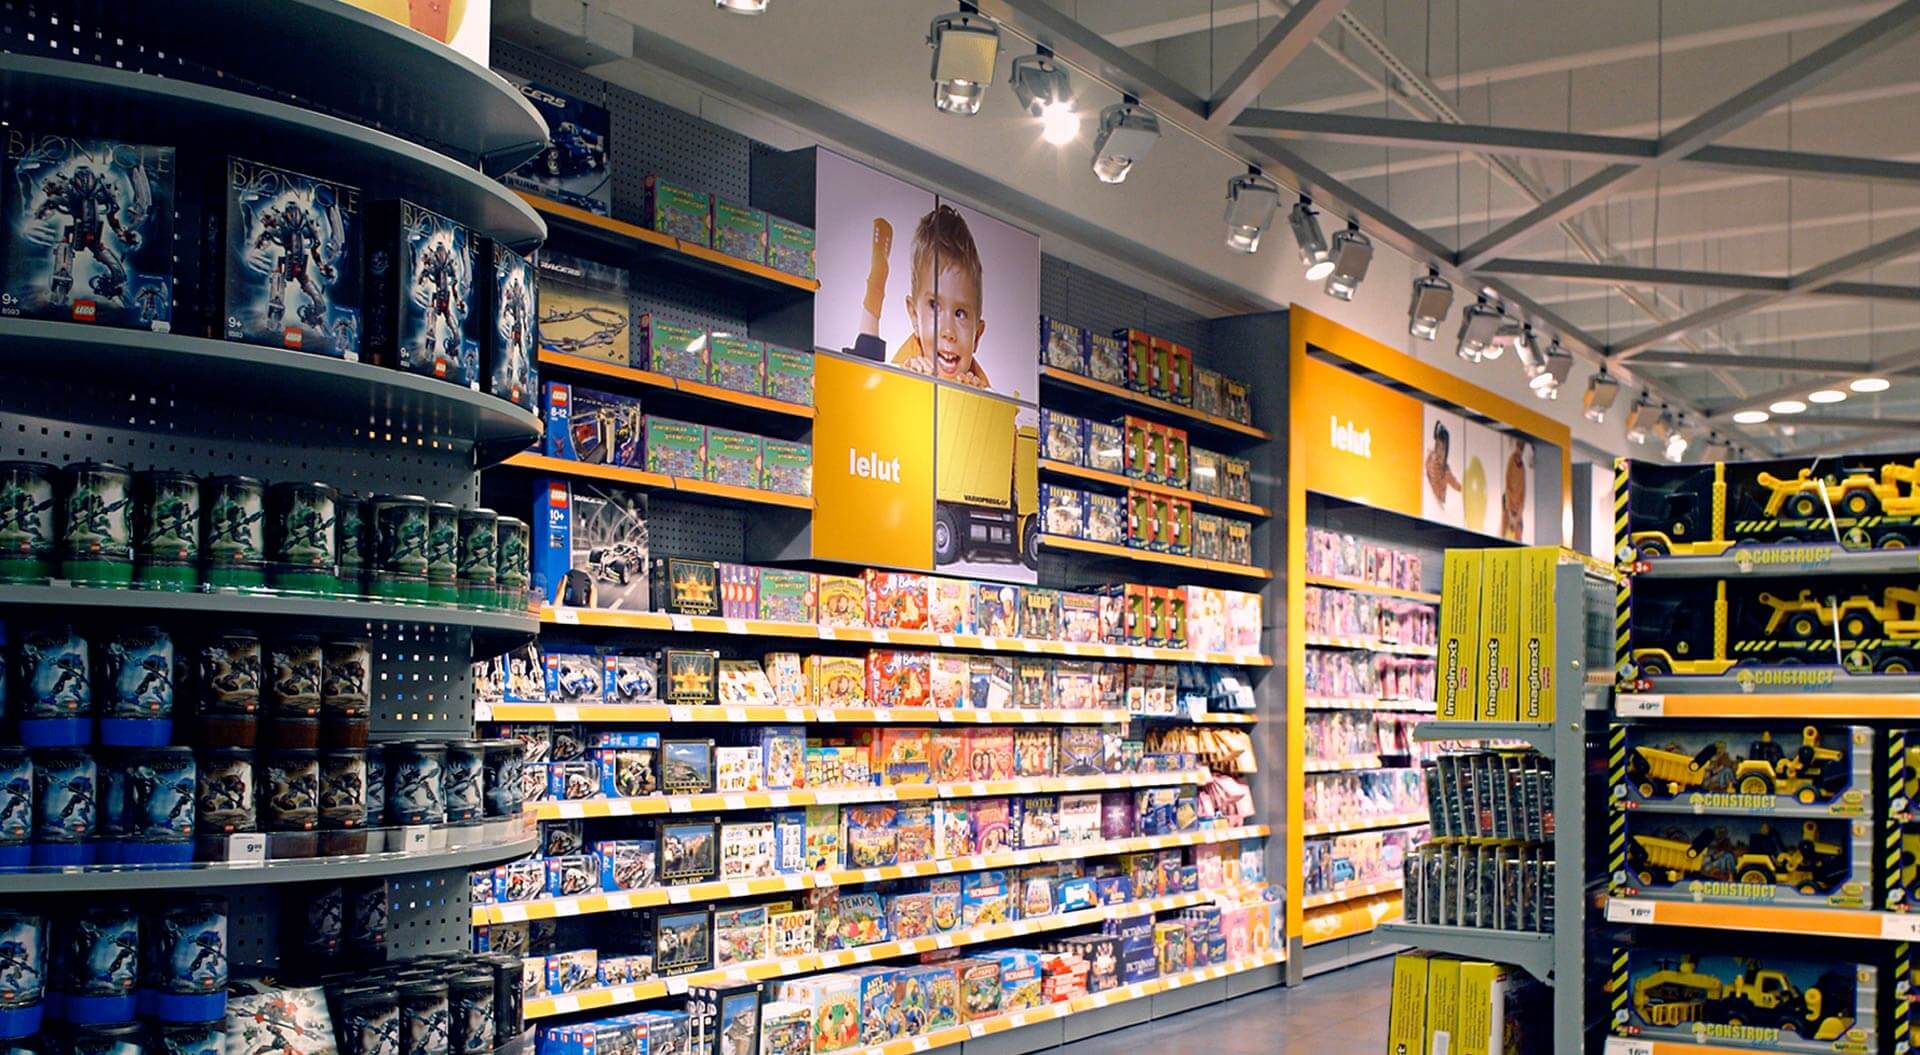 K CityMarket hypermarket Finland, children's toy department merchandising system and branding